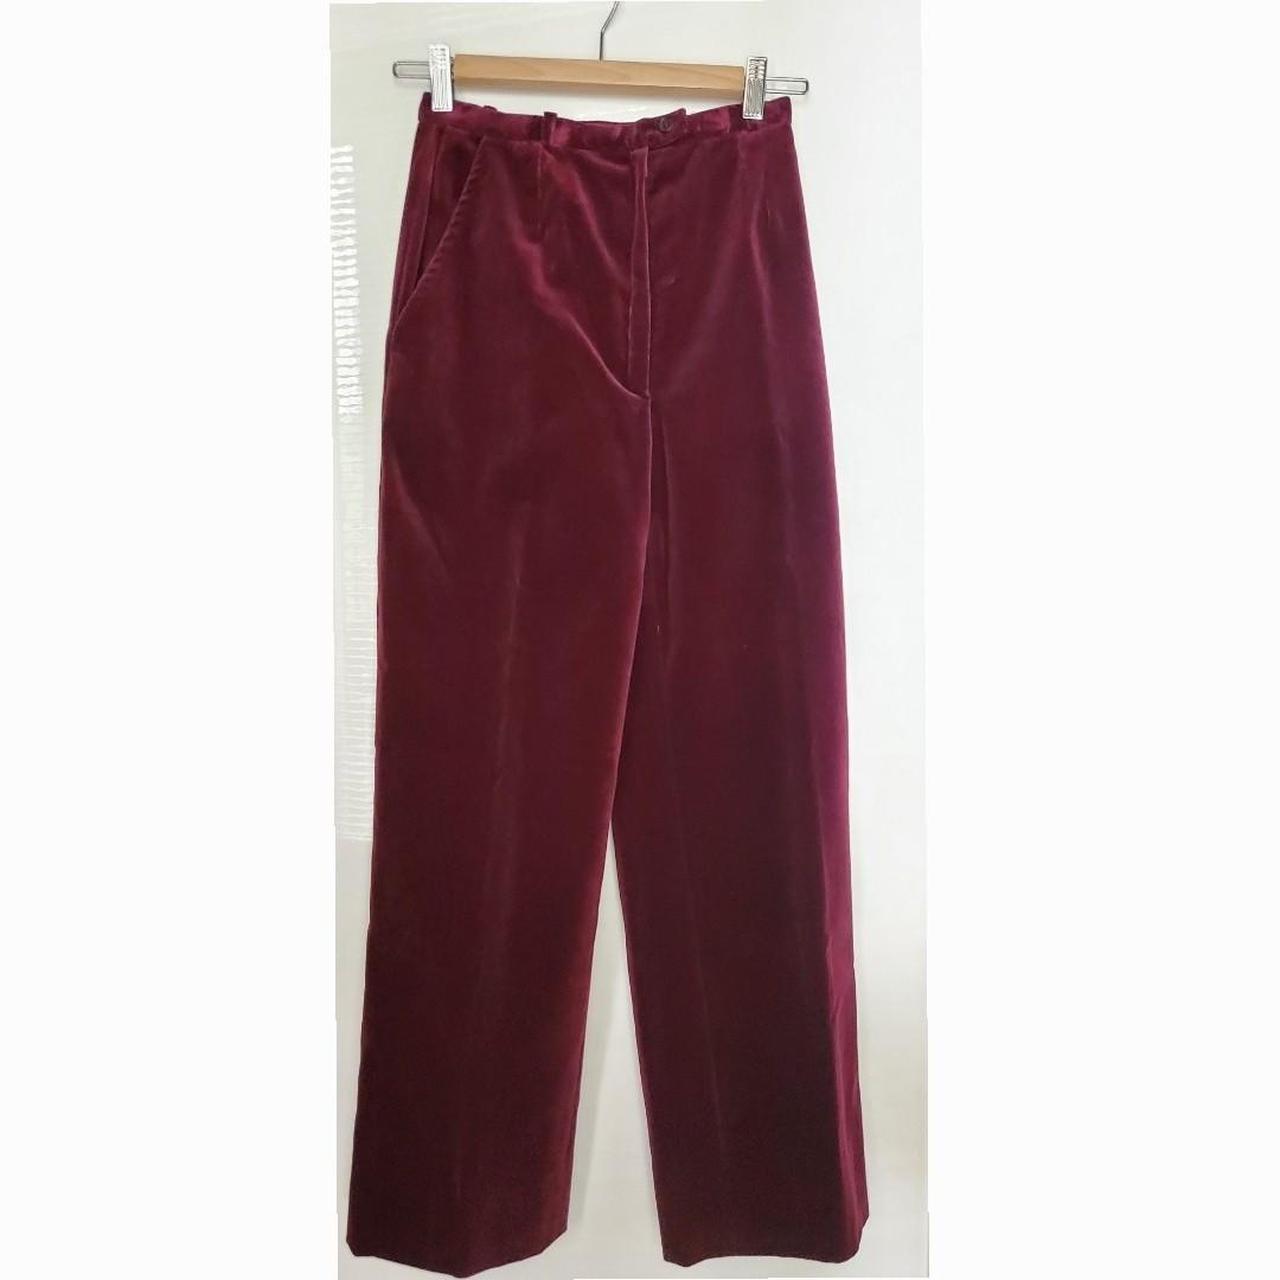 Velvet trousers Schott Brown size 33 UK - US in Velvet - 40718010